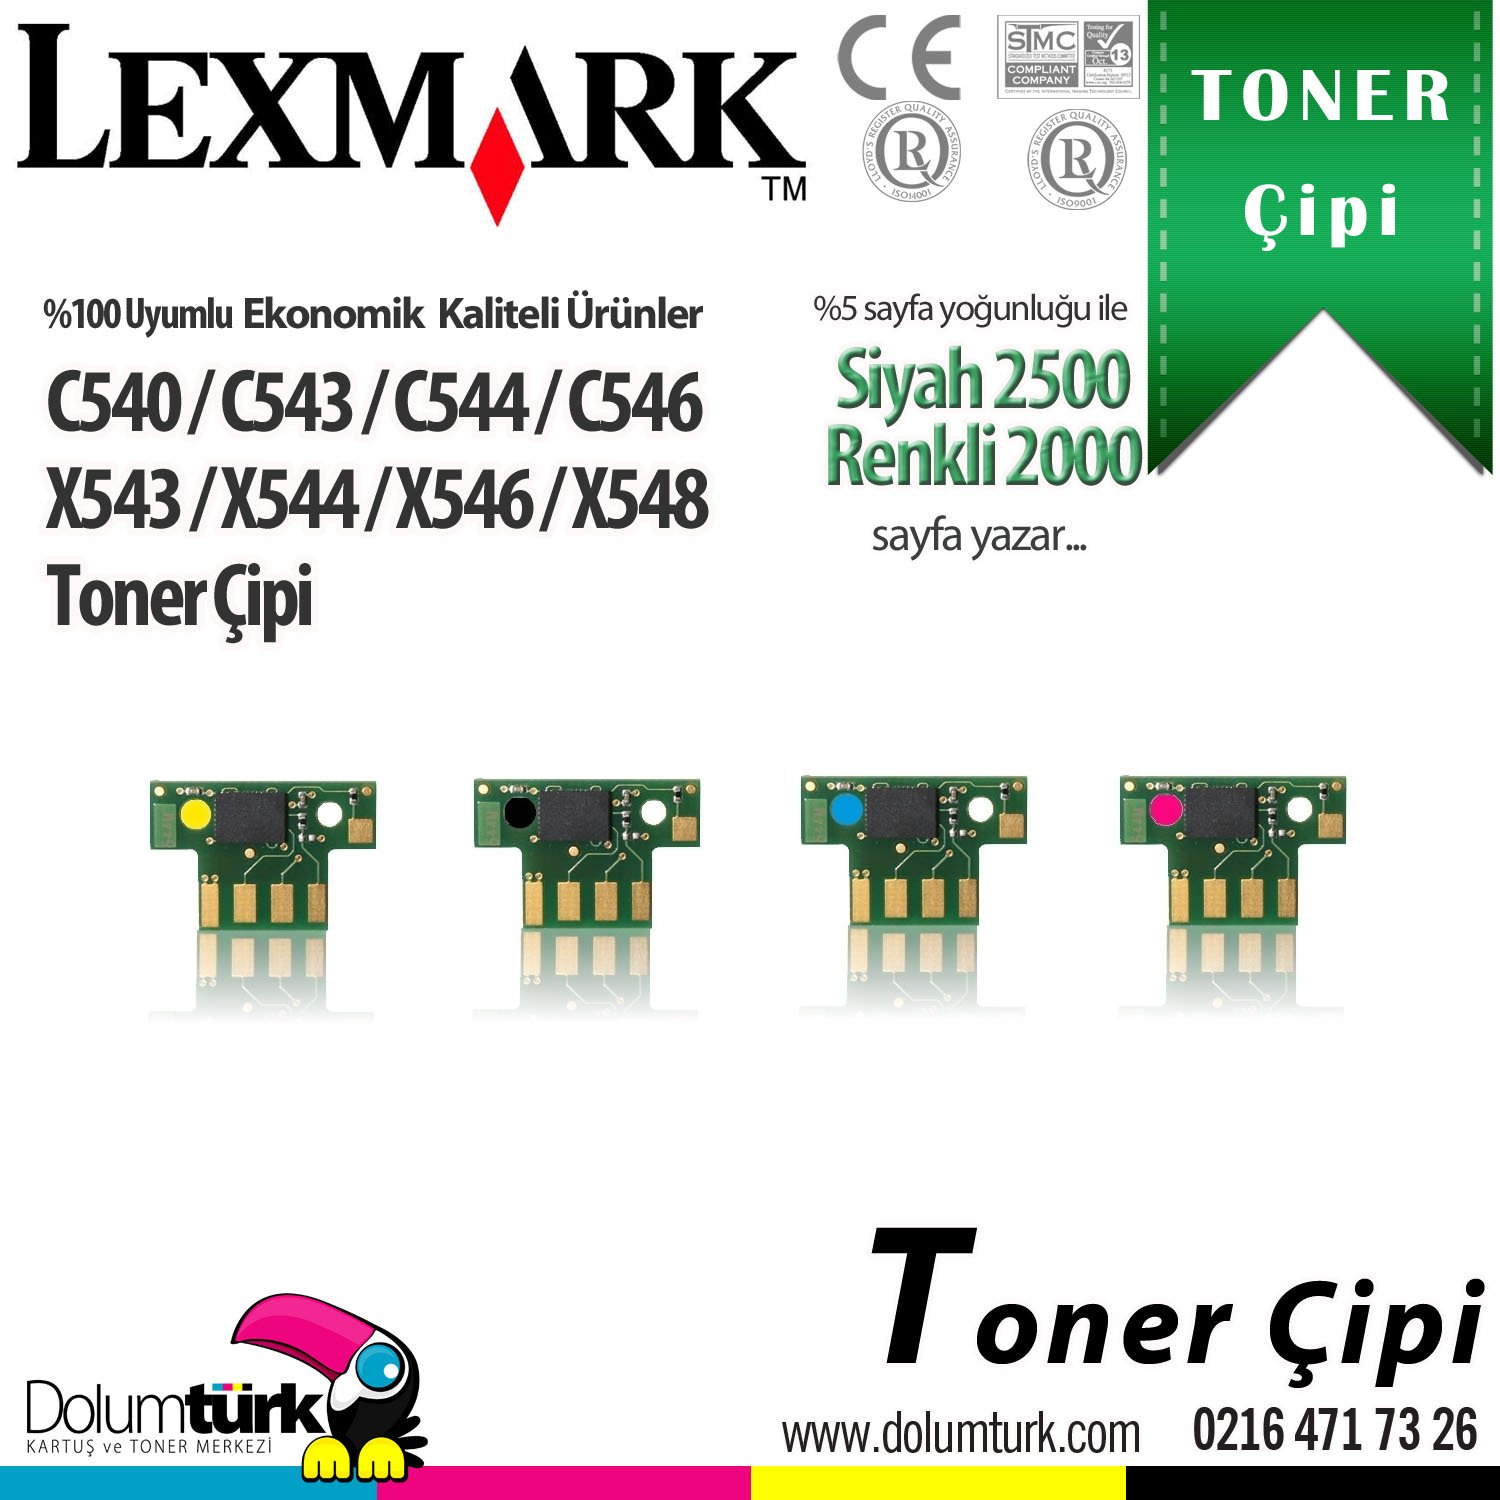 Lexmark C540 / C540n / C543 / C543dn / C544 / C544dn / C544dw / C544n / C546dtn / X543 / X543dn / X544 / X544dn / X544dw / X544n / X546dtn / X548de / X548dte Toner Çipi